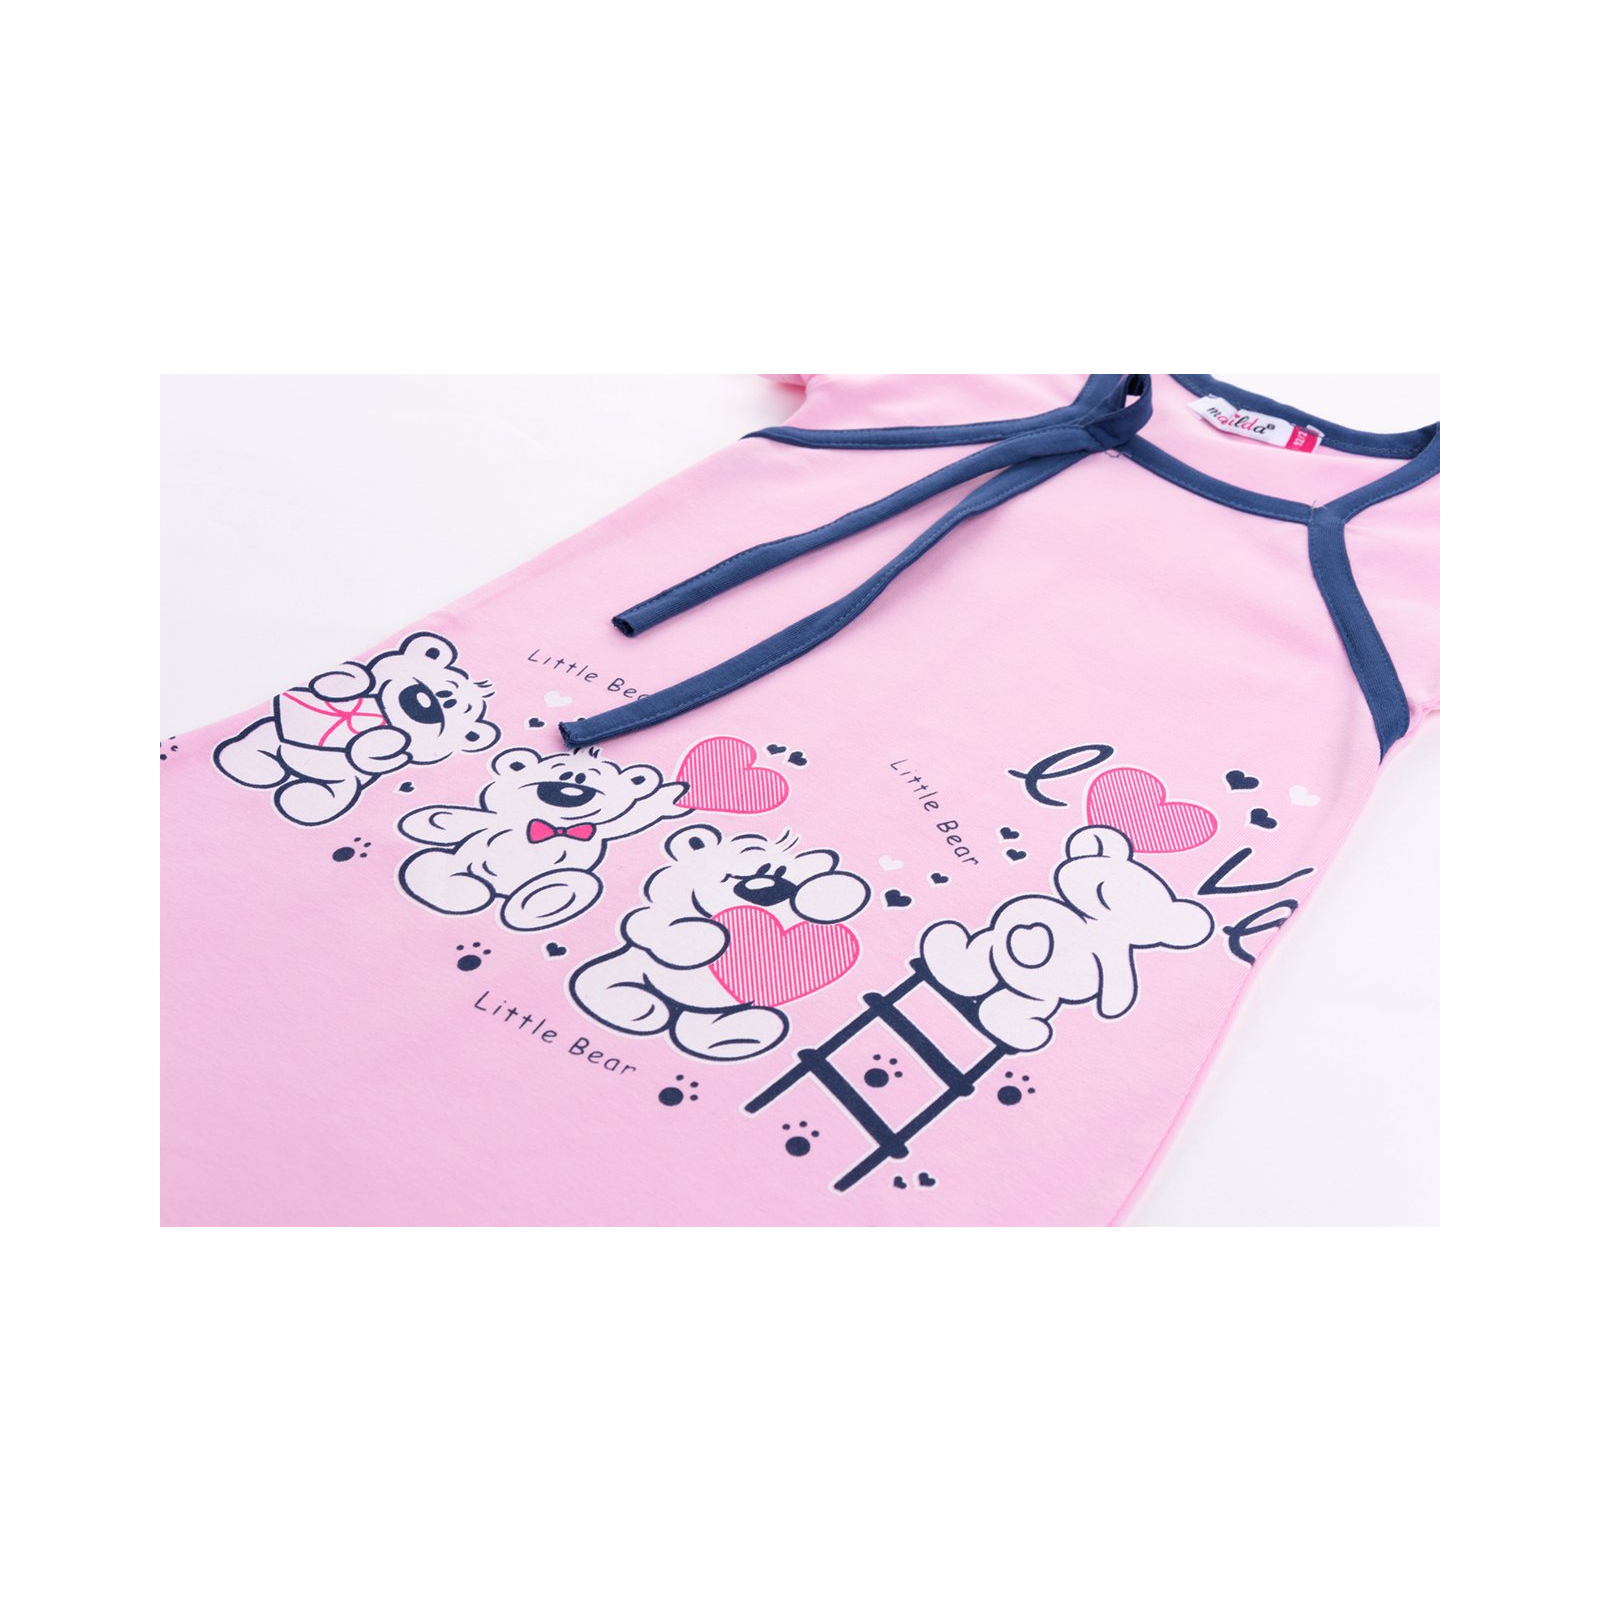 Пижама Matilda и халат с мишками "Love" (7445-134G-pink) изображение 8